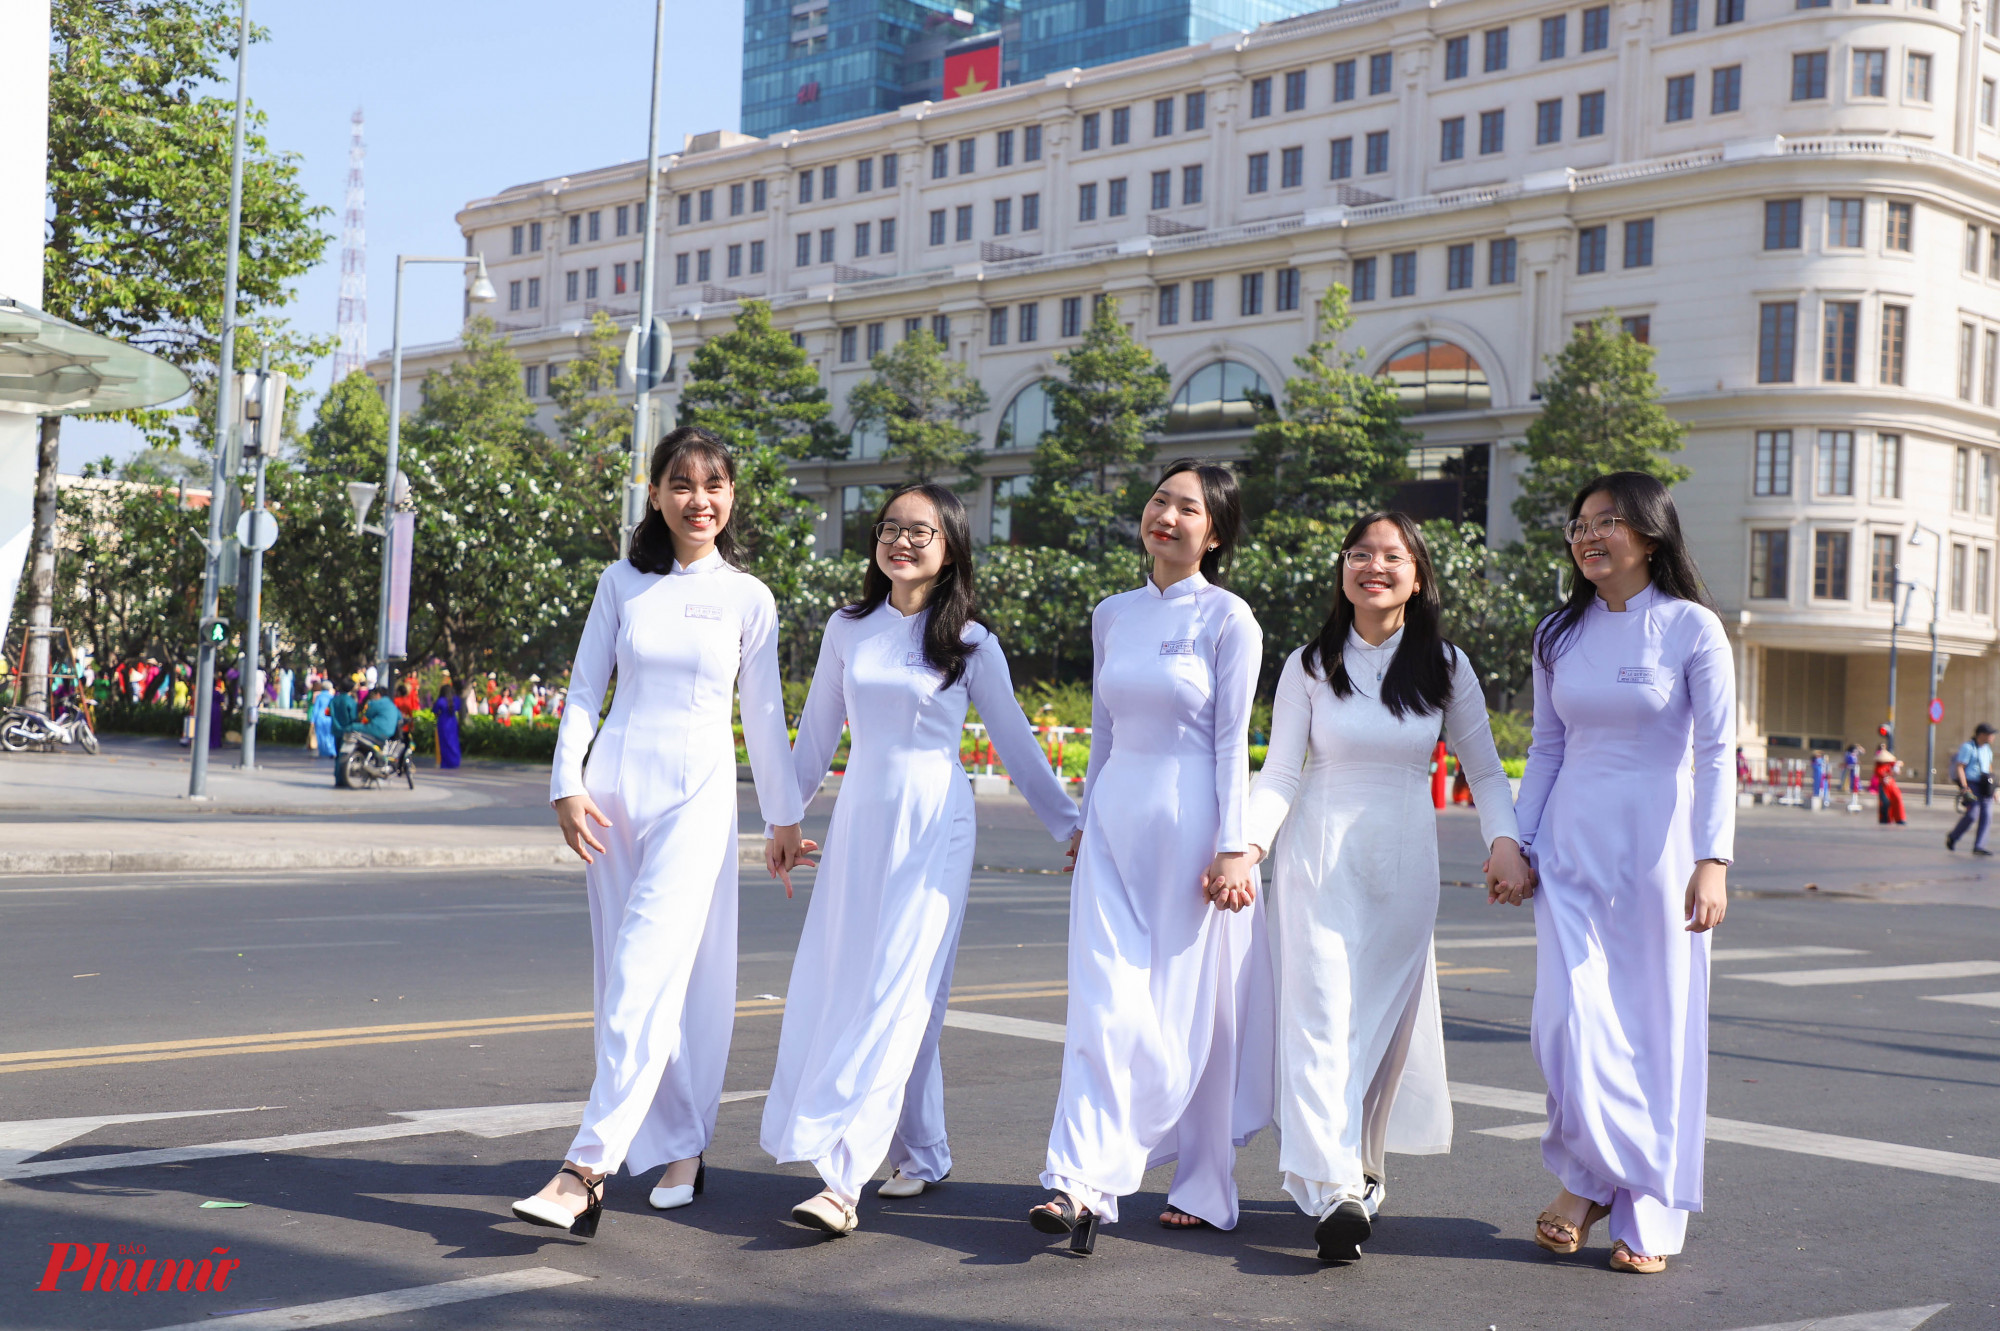 Nhiều nữ sinh cũng tham gia diễu hành trong tà áo dài trắng thướt tha. Các em cũng tranh thủ ghi lại nhiều khoảnh khắc đẹp tại trung tâm TPHCM vào dịp cuối tuần mát mẻ, sôi động.